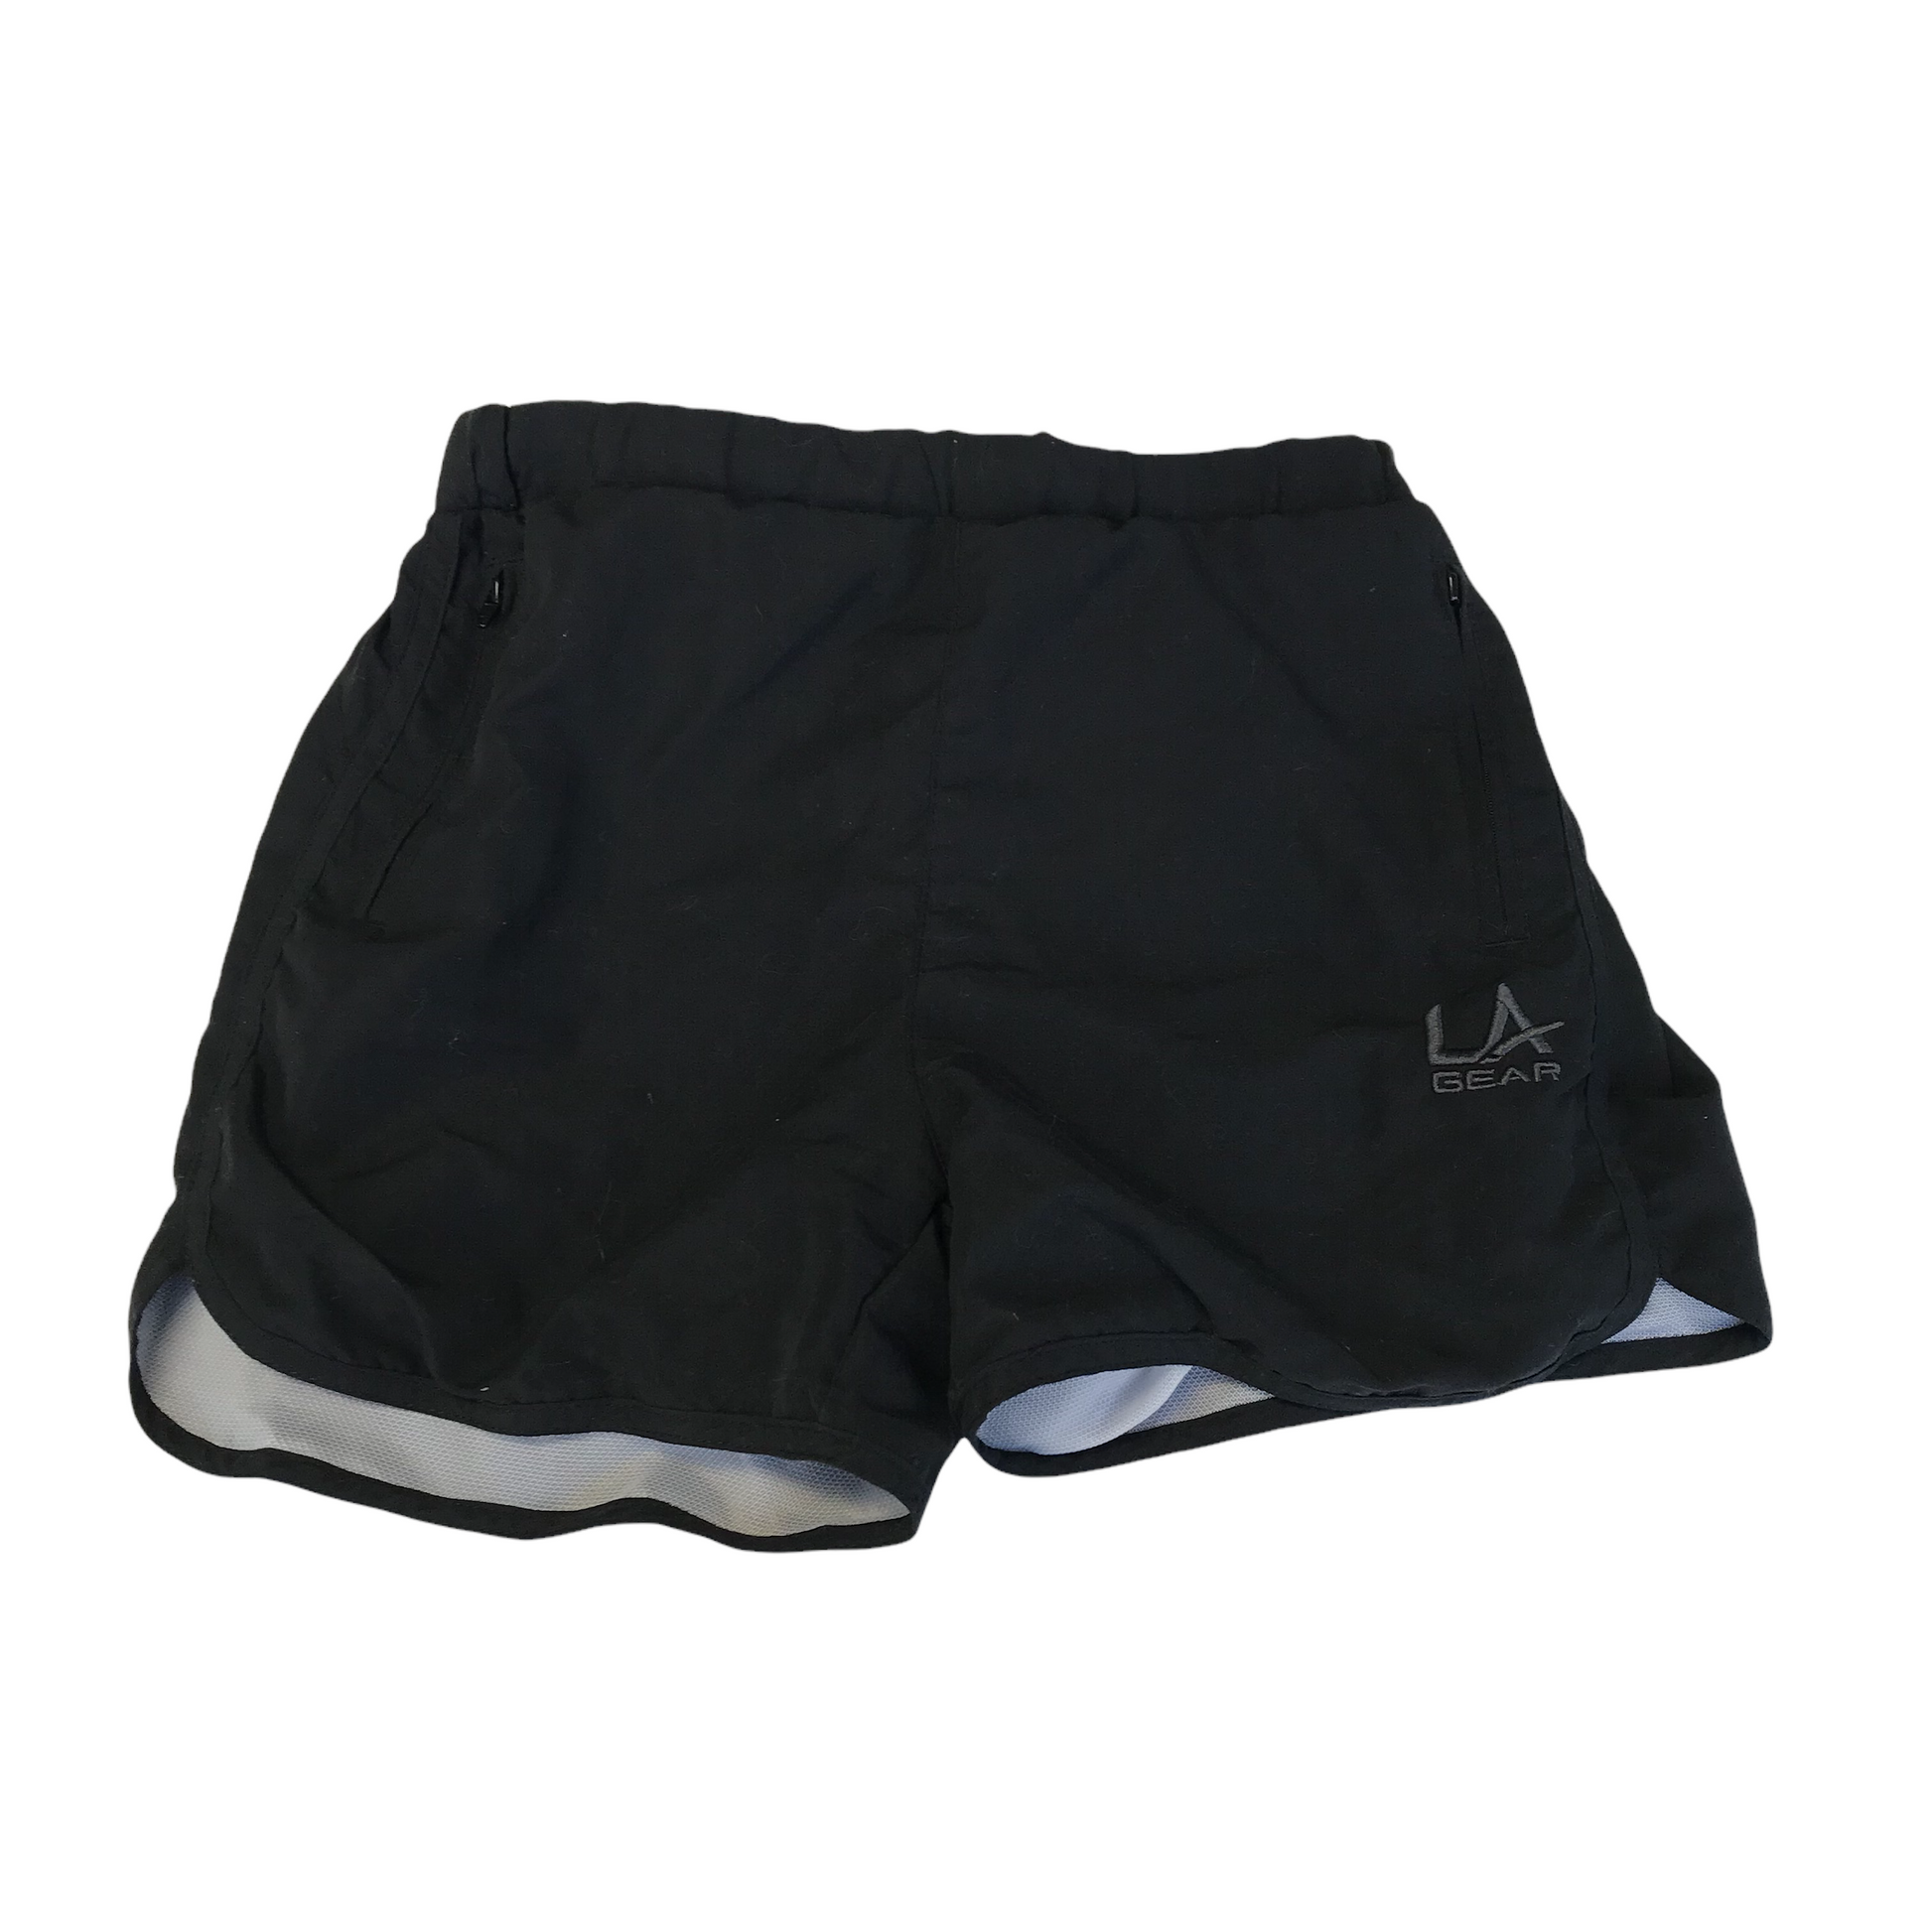 Official Logo Gear Shorts, Basketball Shorts, Gym Shorts, Compression Shorts